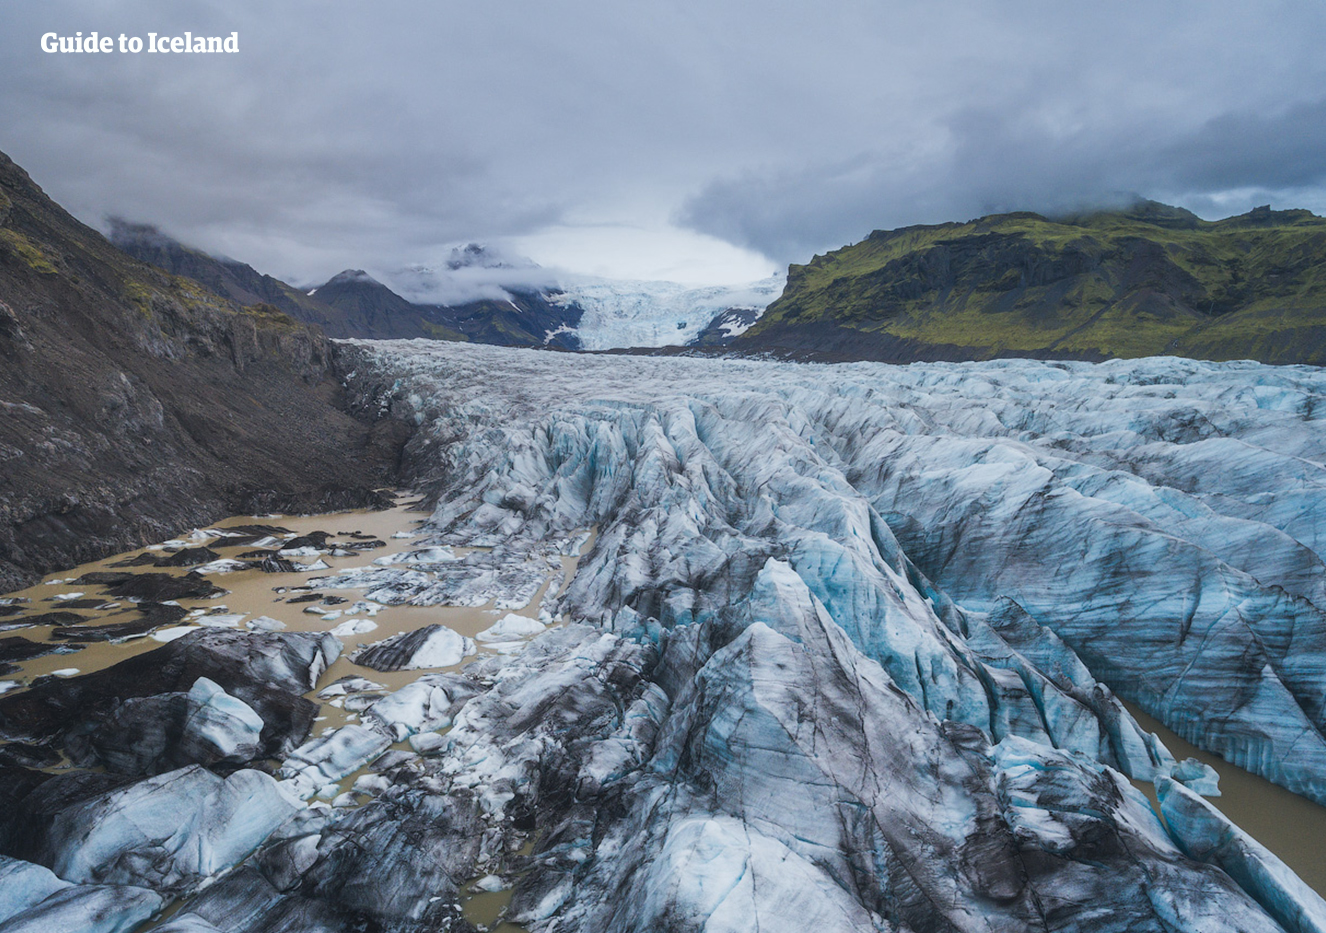 La riserva naturale di Skaftafell nell'Islanda del sud è nota soprattutto per i suoi paesaggi di ghiaccio, come Svínafellsjökull (nella foto), e per le cascate, come Svartifoss.